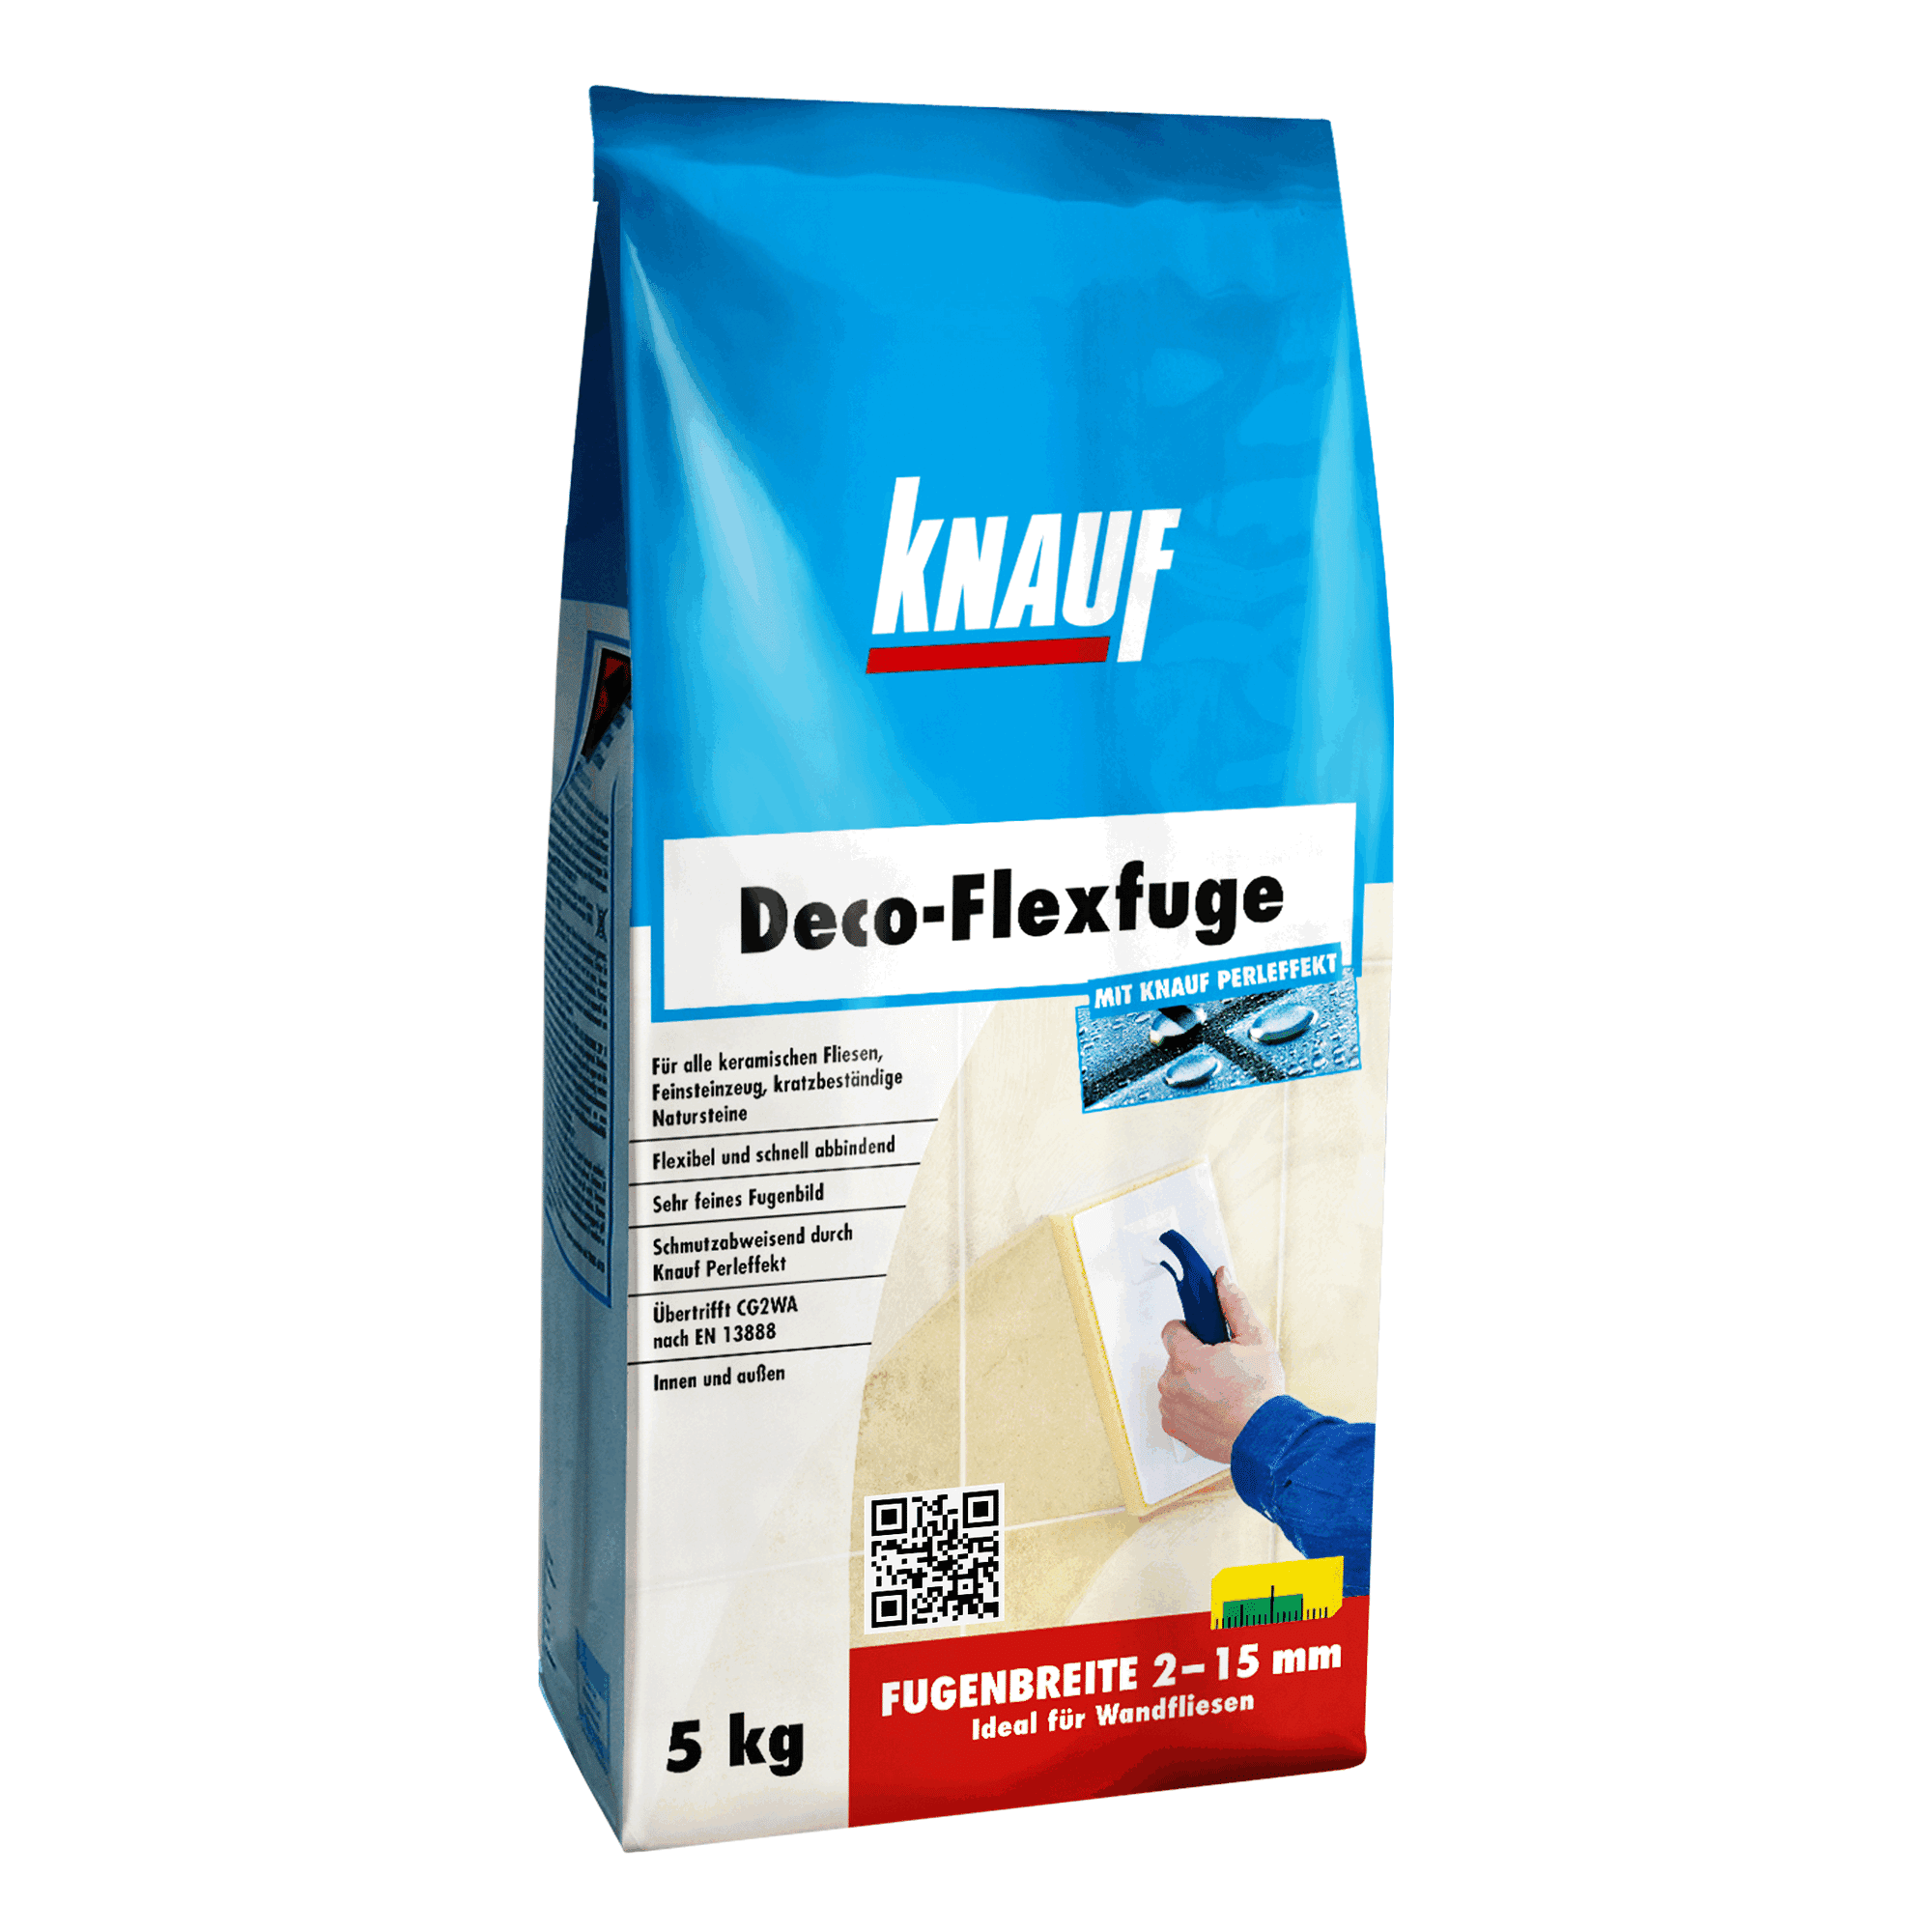 Fugenmörtel "Deco-Flexfuge" basalt 5 kg + product picture